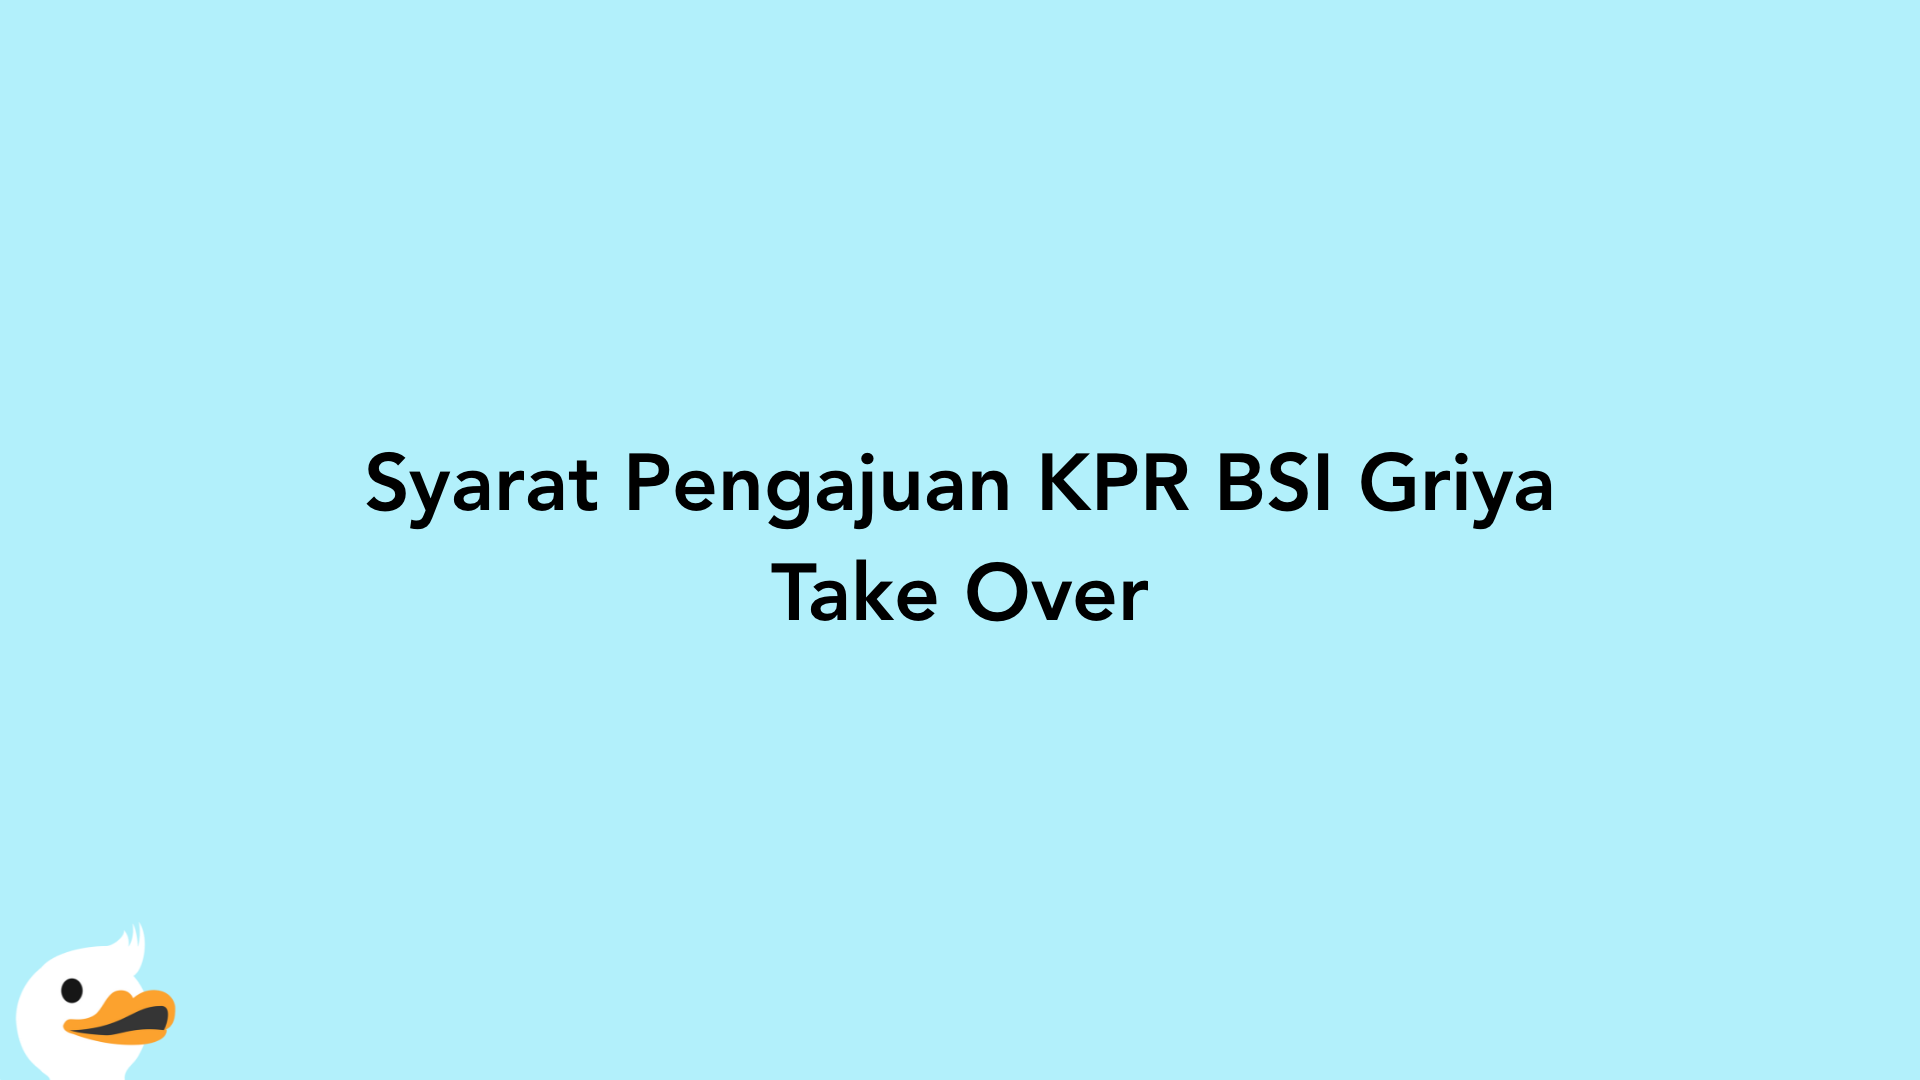 Syarat Pengajuan KPR BSI Griya Take Over